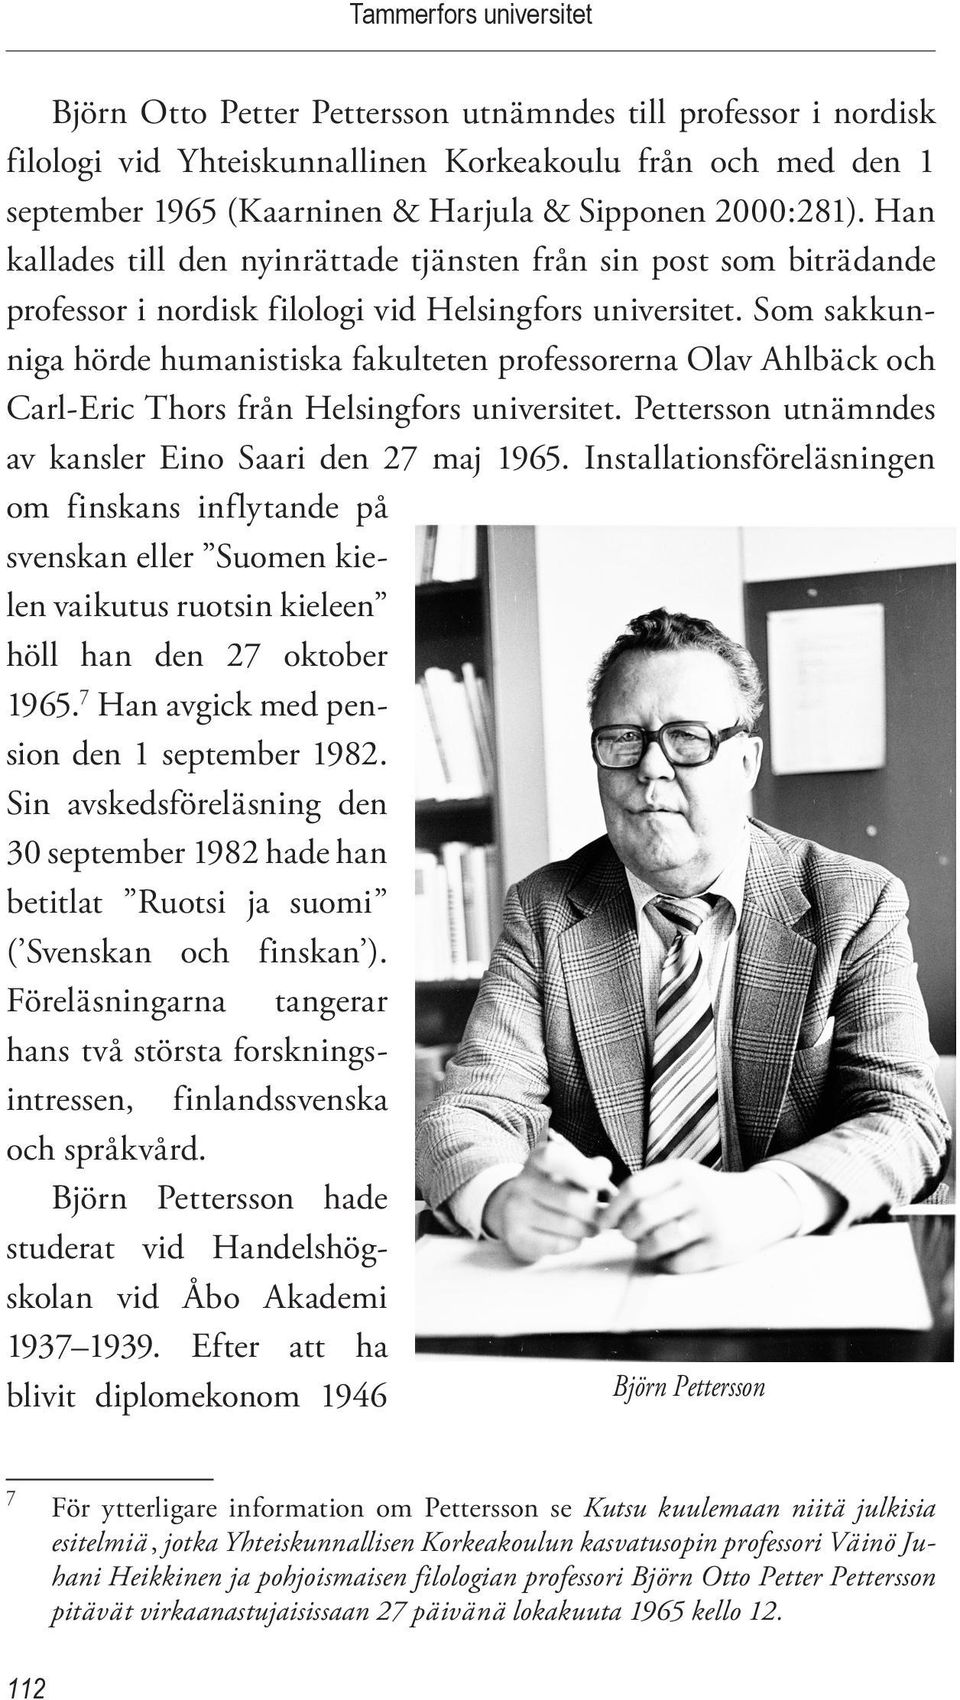 Som sakkunniga hörde humanistiska fakulteten professorerna Olav Ahlbäck och Carl-Eric Thors från Helsingfors universitet. Pettersson utnämndes av kansler Eino Saari den 27 maj 1965.